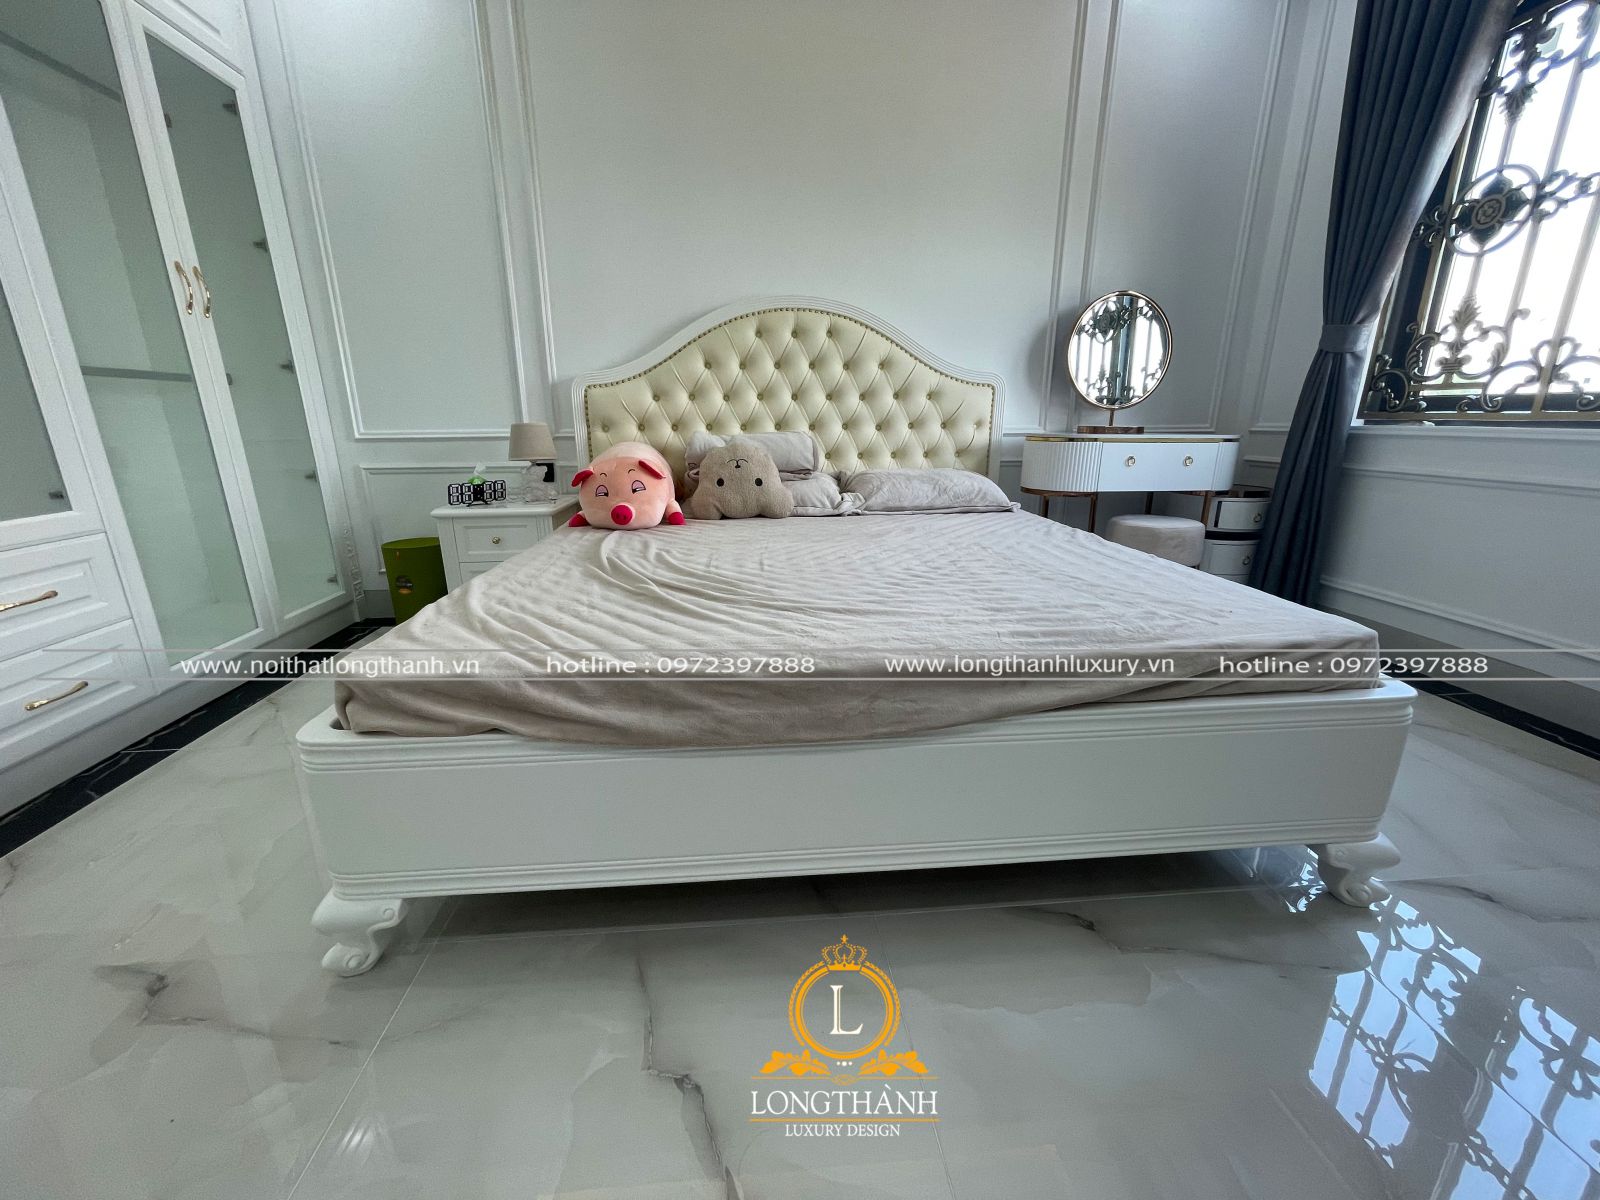 Giường ngủ tân cổ điển Thái Nguyên cao cấp, giá tốt